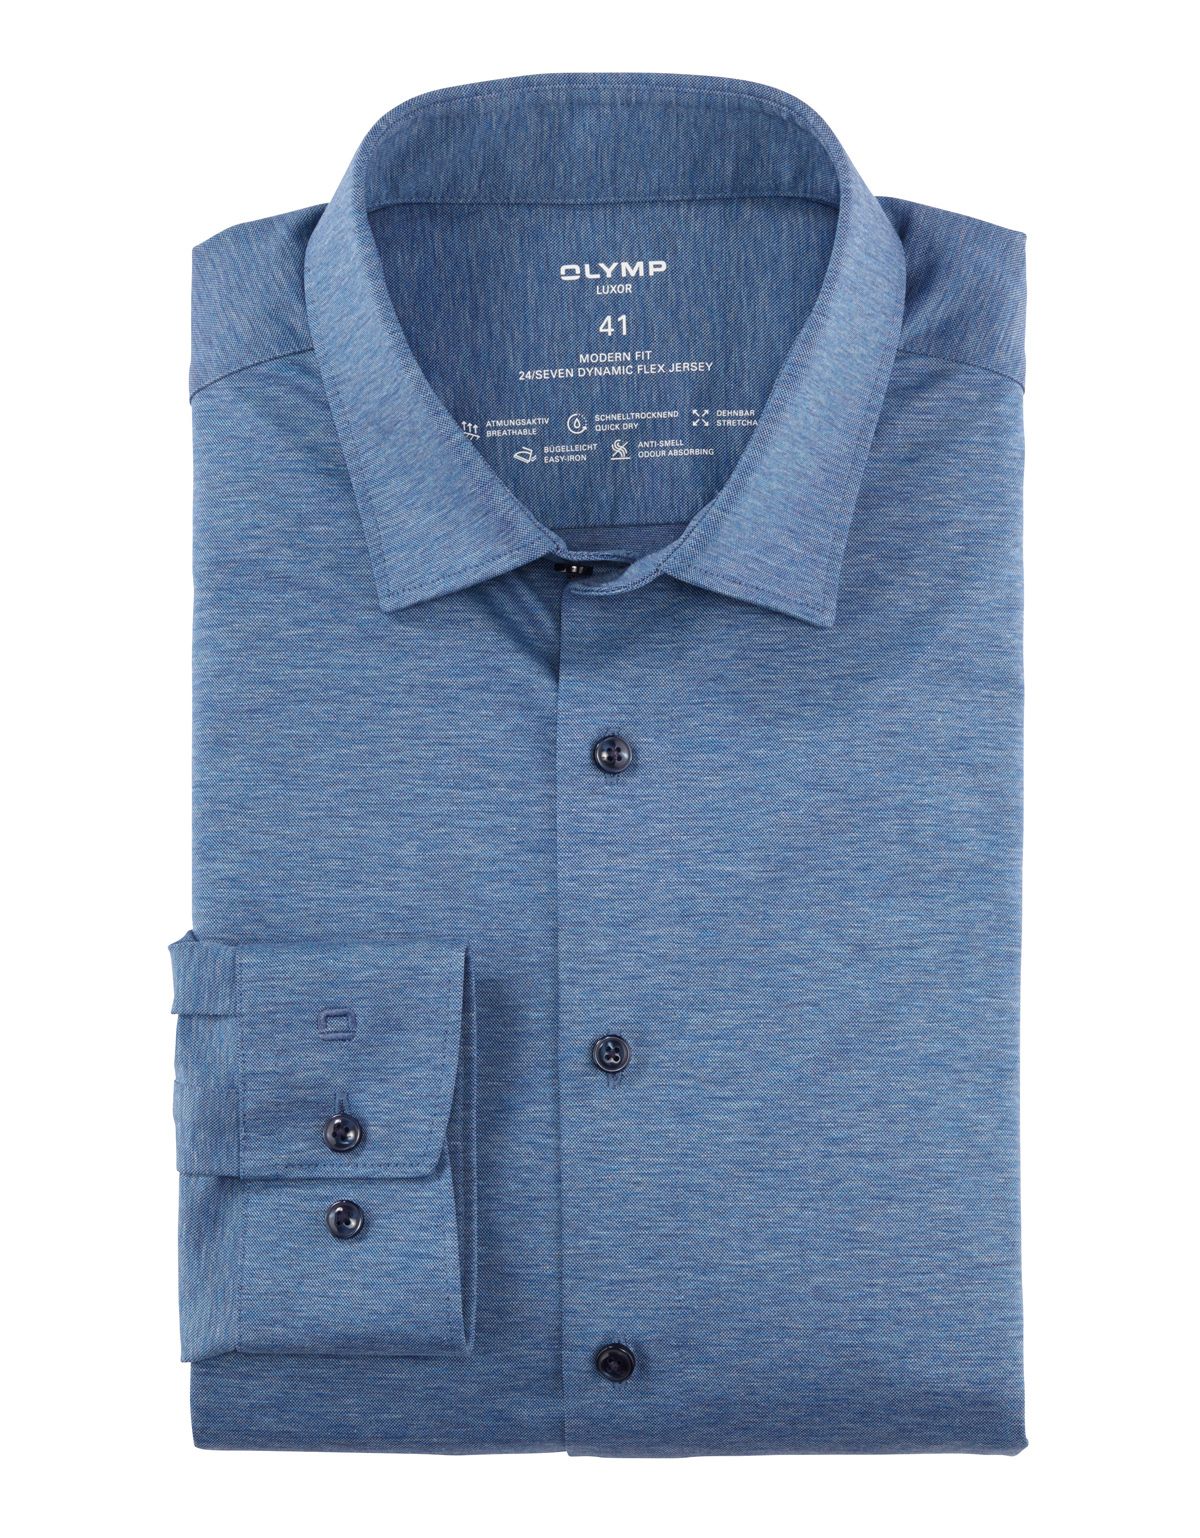 Рубашка синяя трикотажная OLYMP Luxor 24/7, modern fit, на рост выше 186[ГОЛУБОЙ]